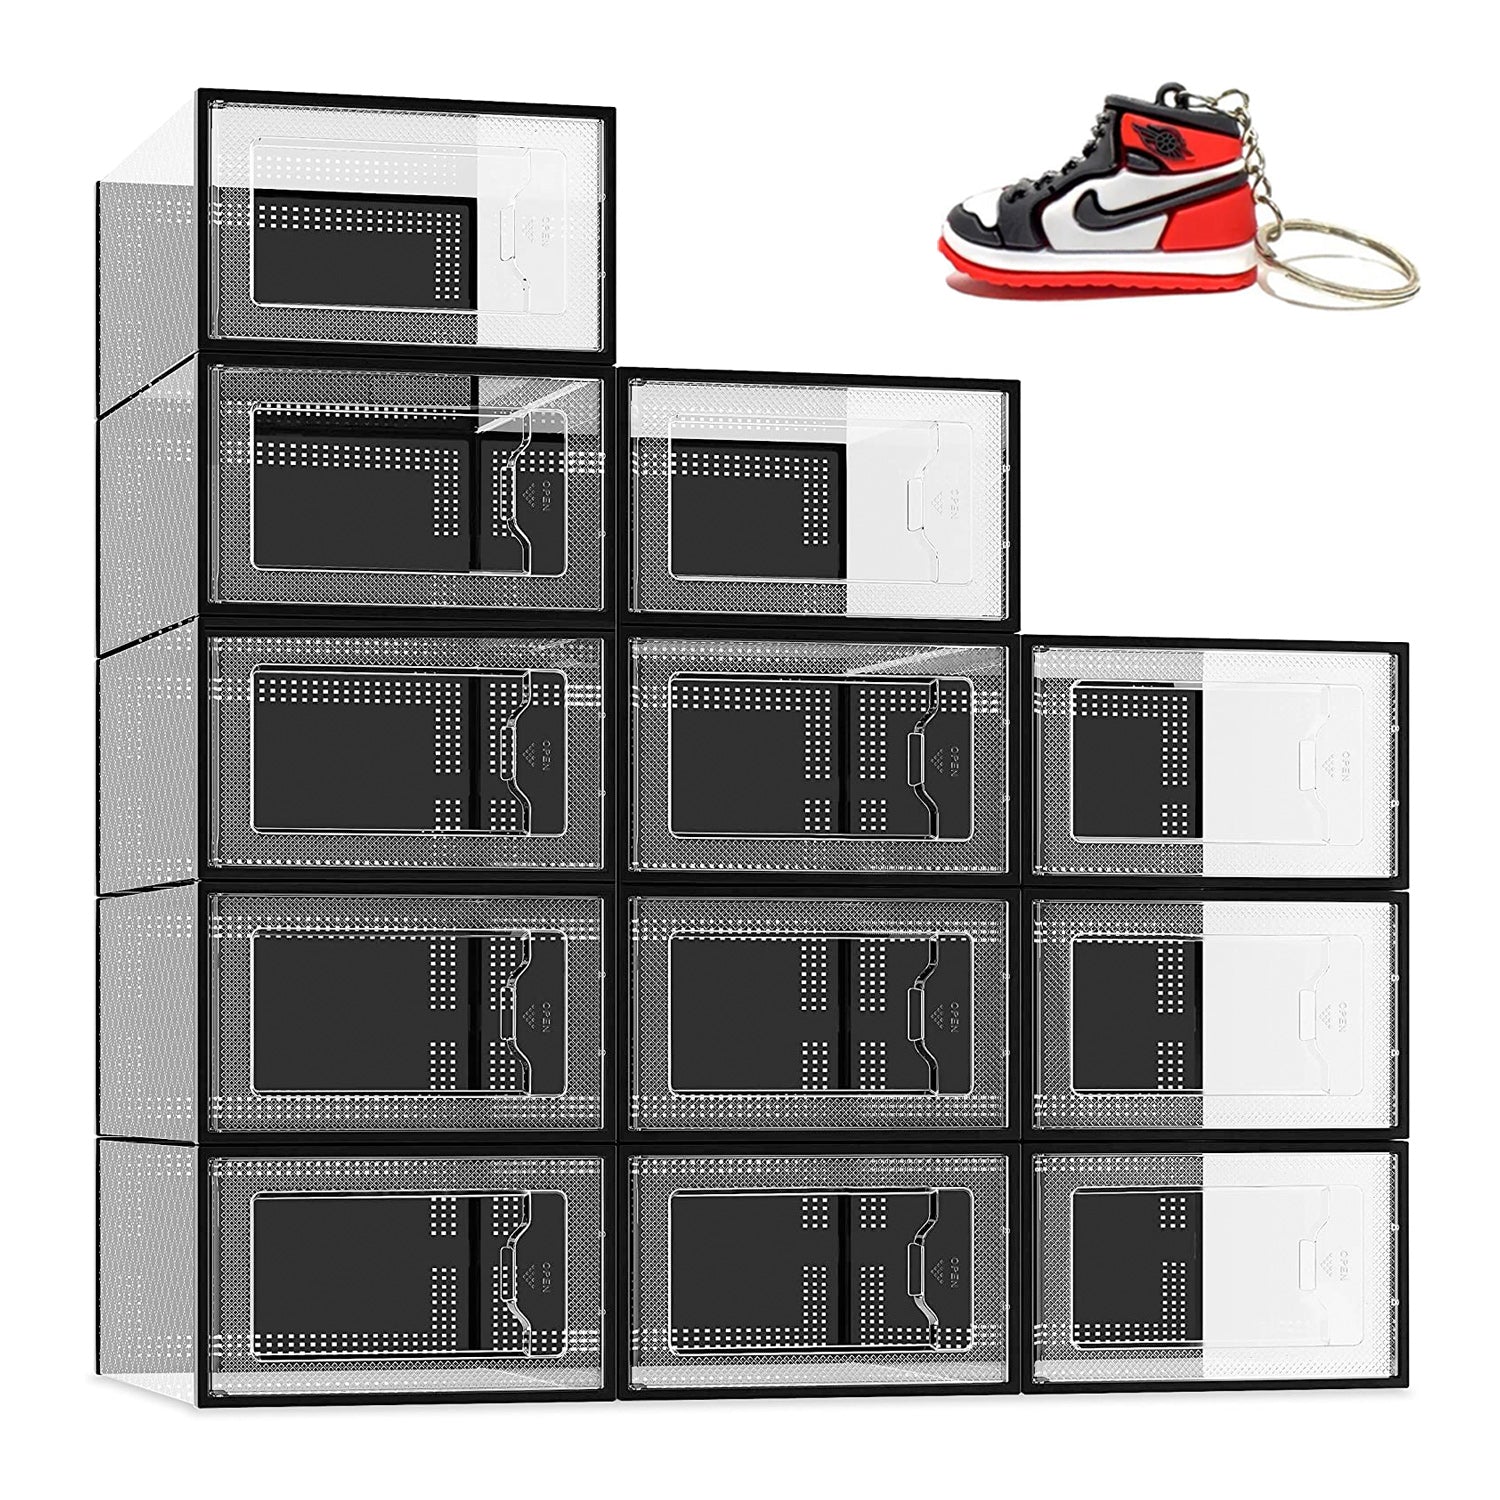 Cajas Organizadoras Transparentes Para Sneakers - ®